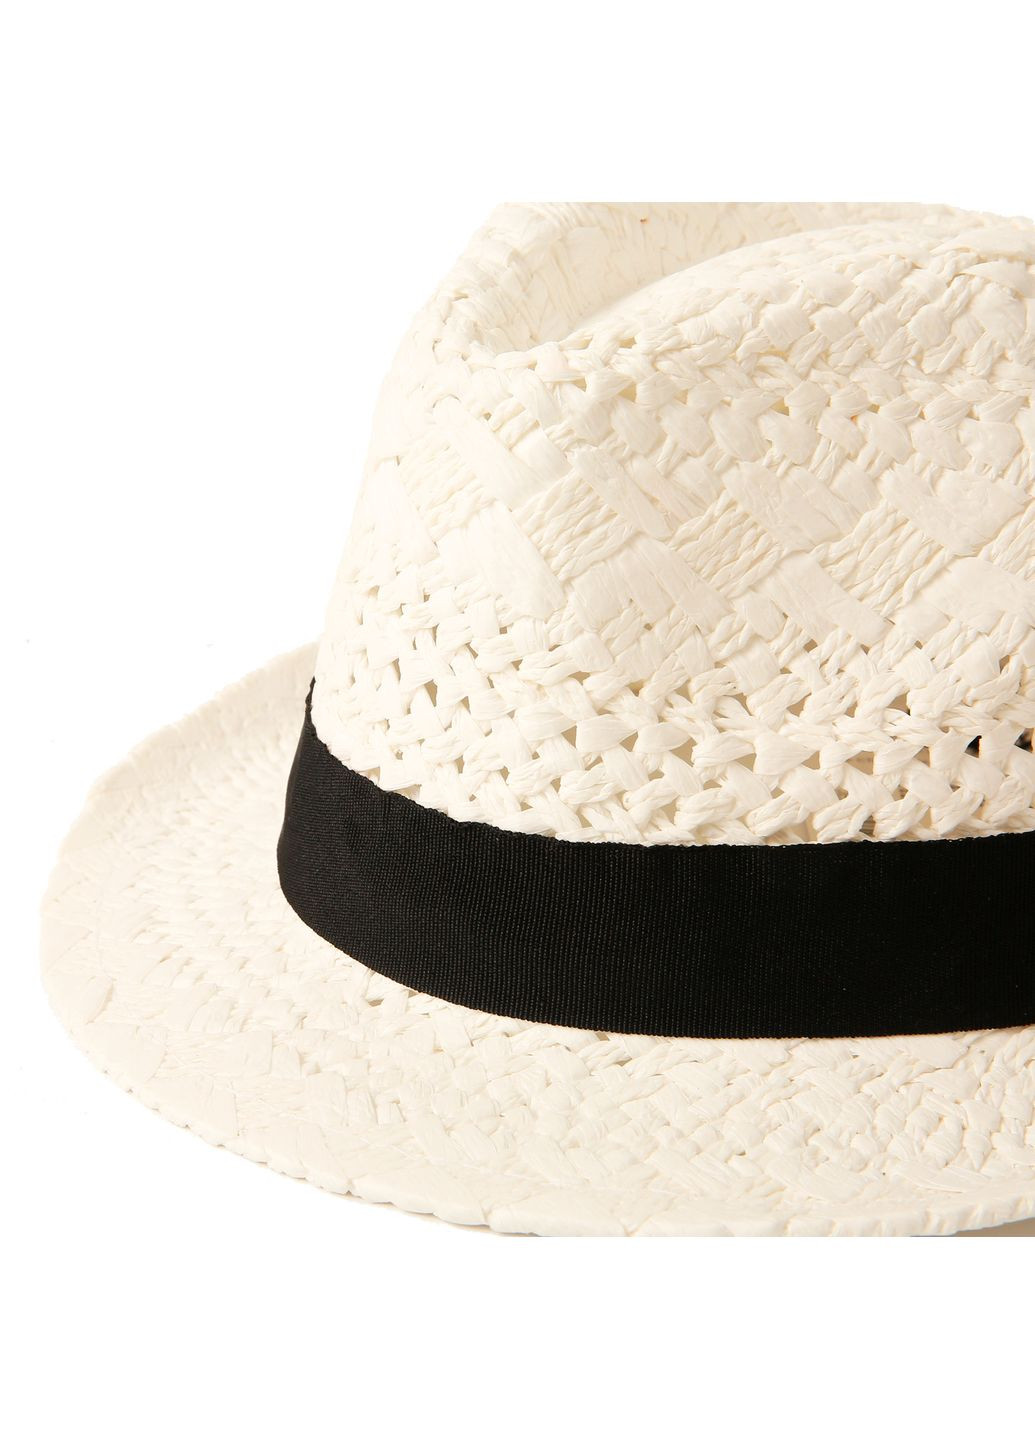 Шляпа трилби женская бумага белая AMANDA LuckyLOOK 817-624 (289478384)